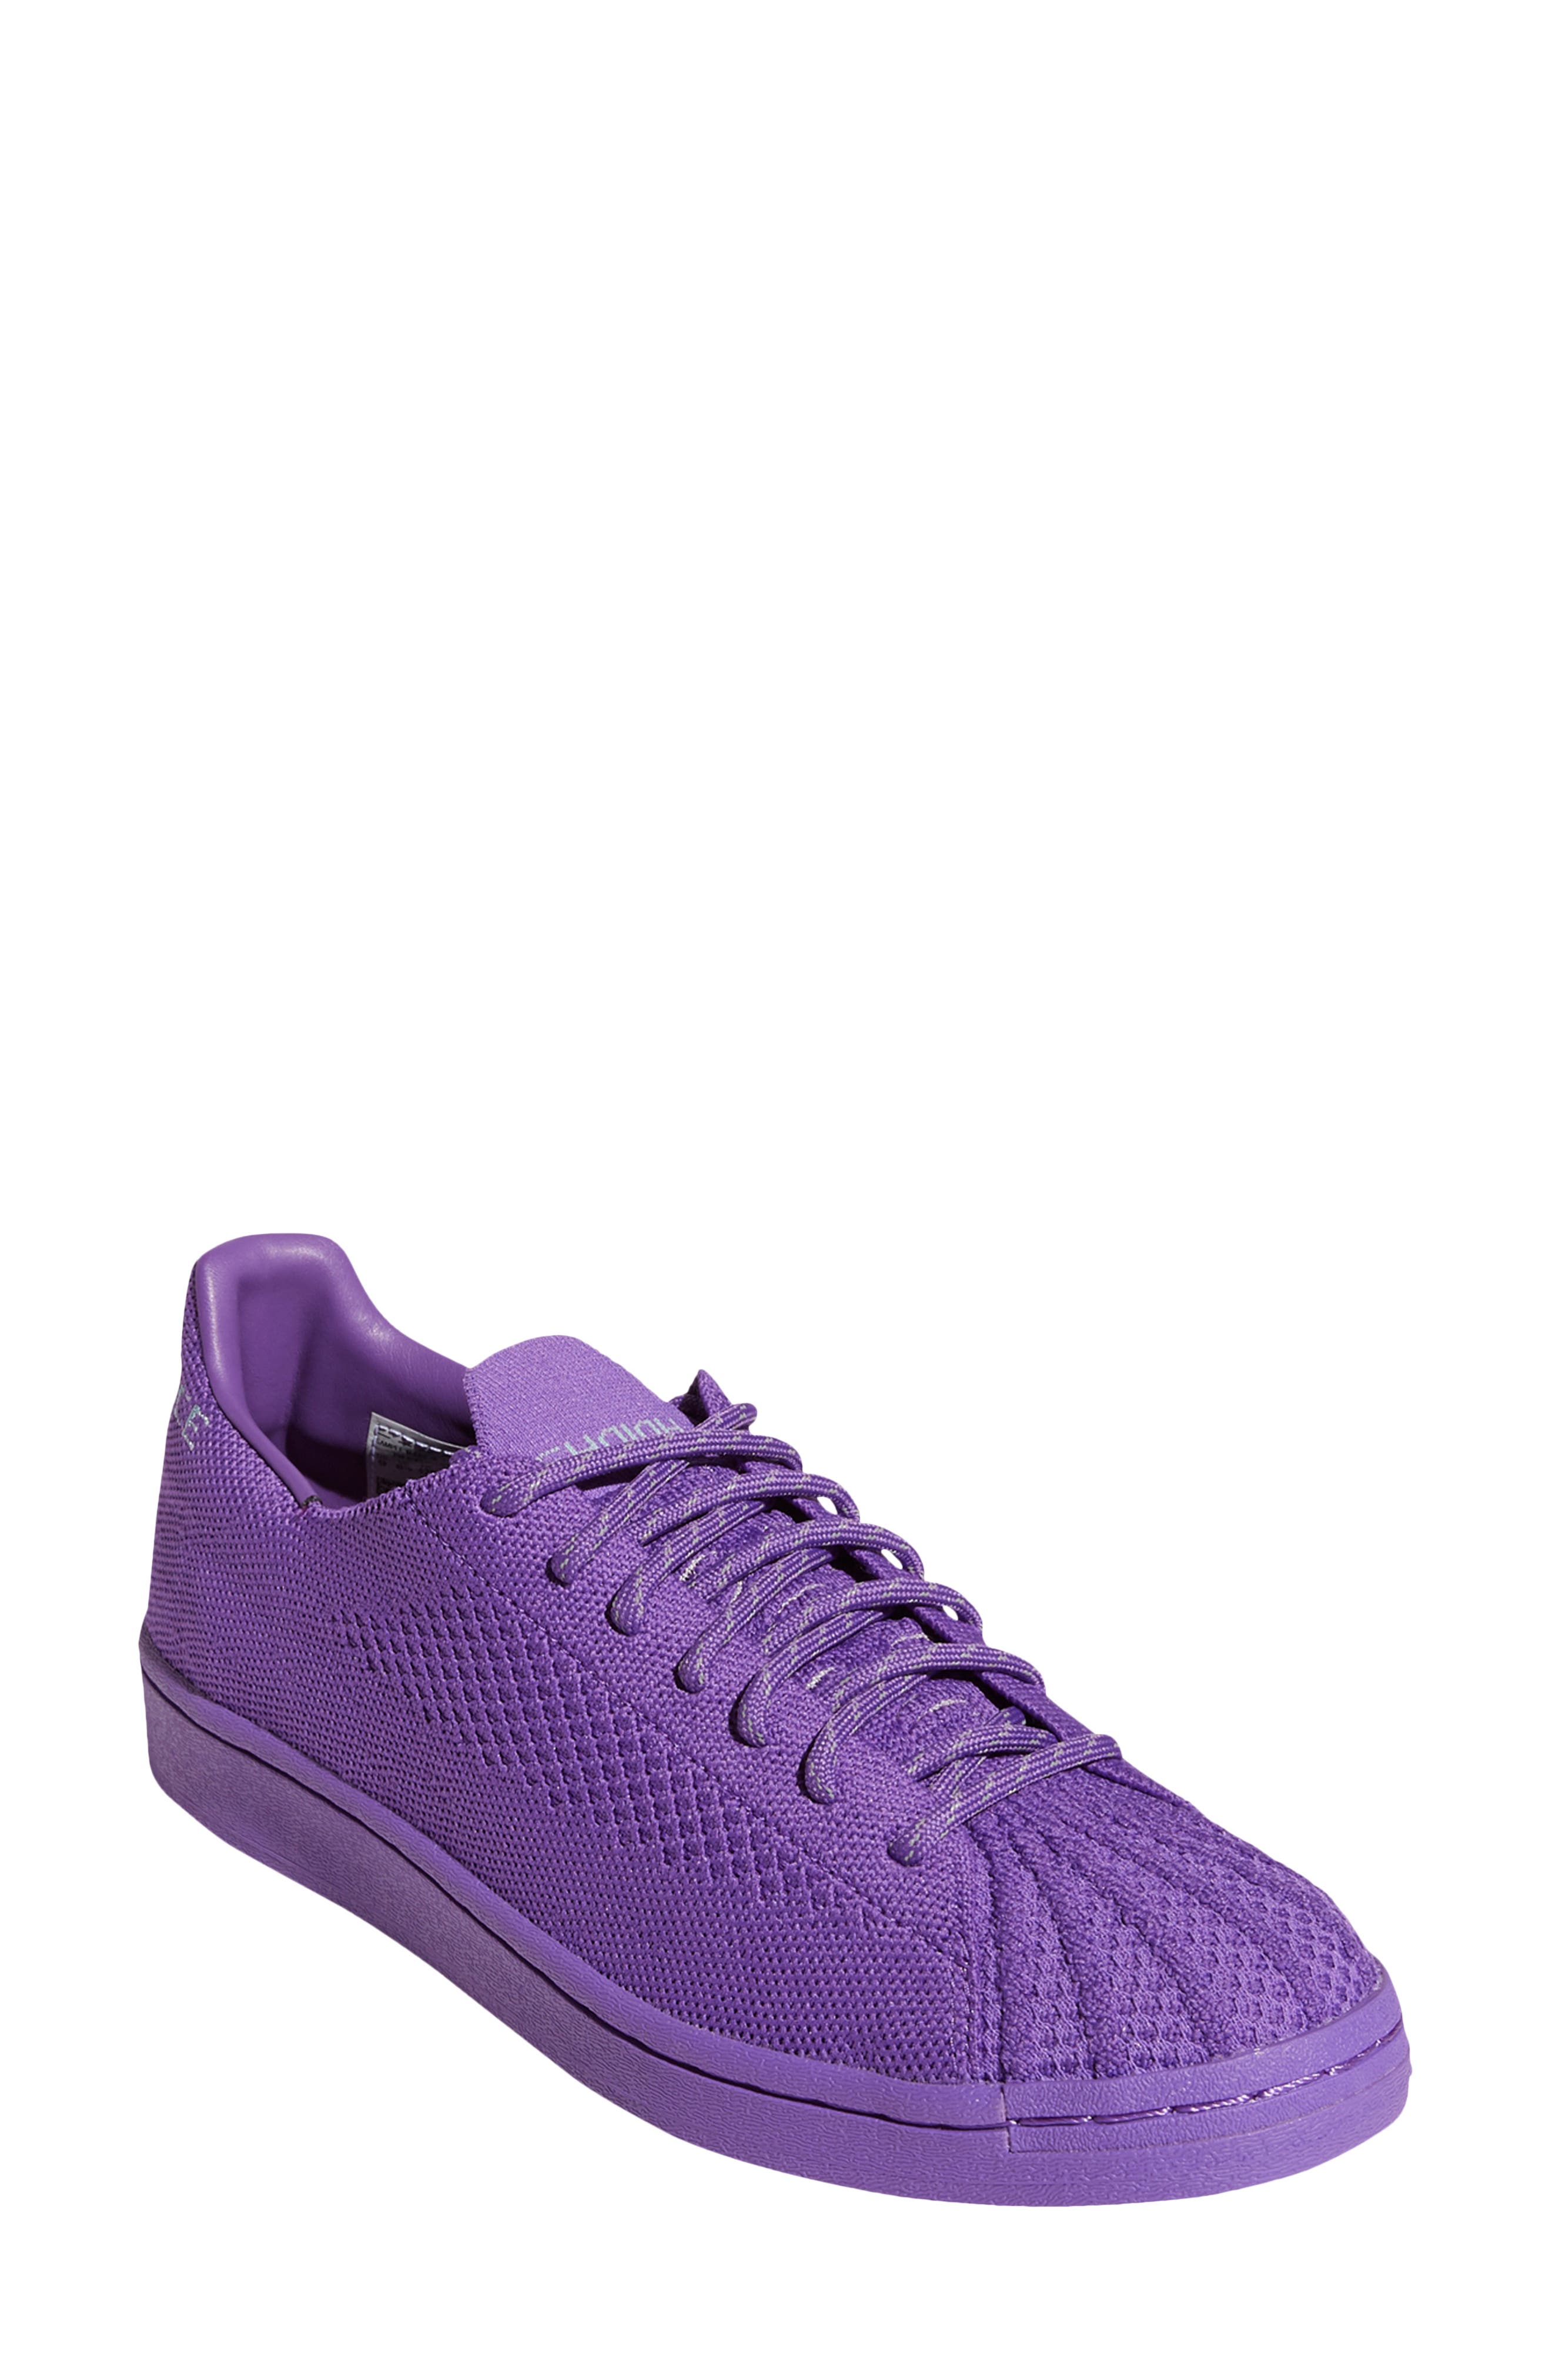 adidas shoes purple mens